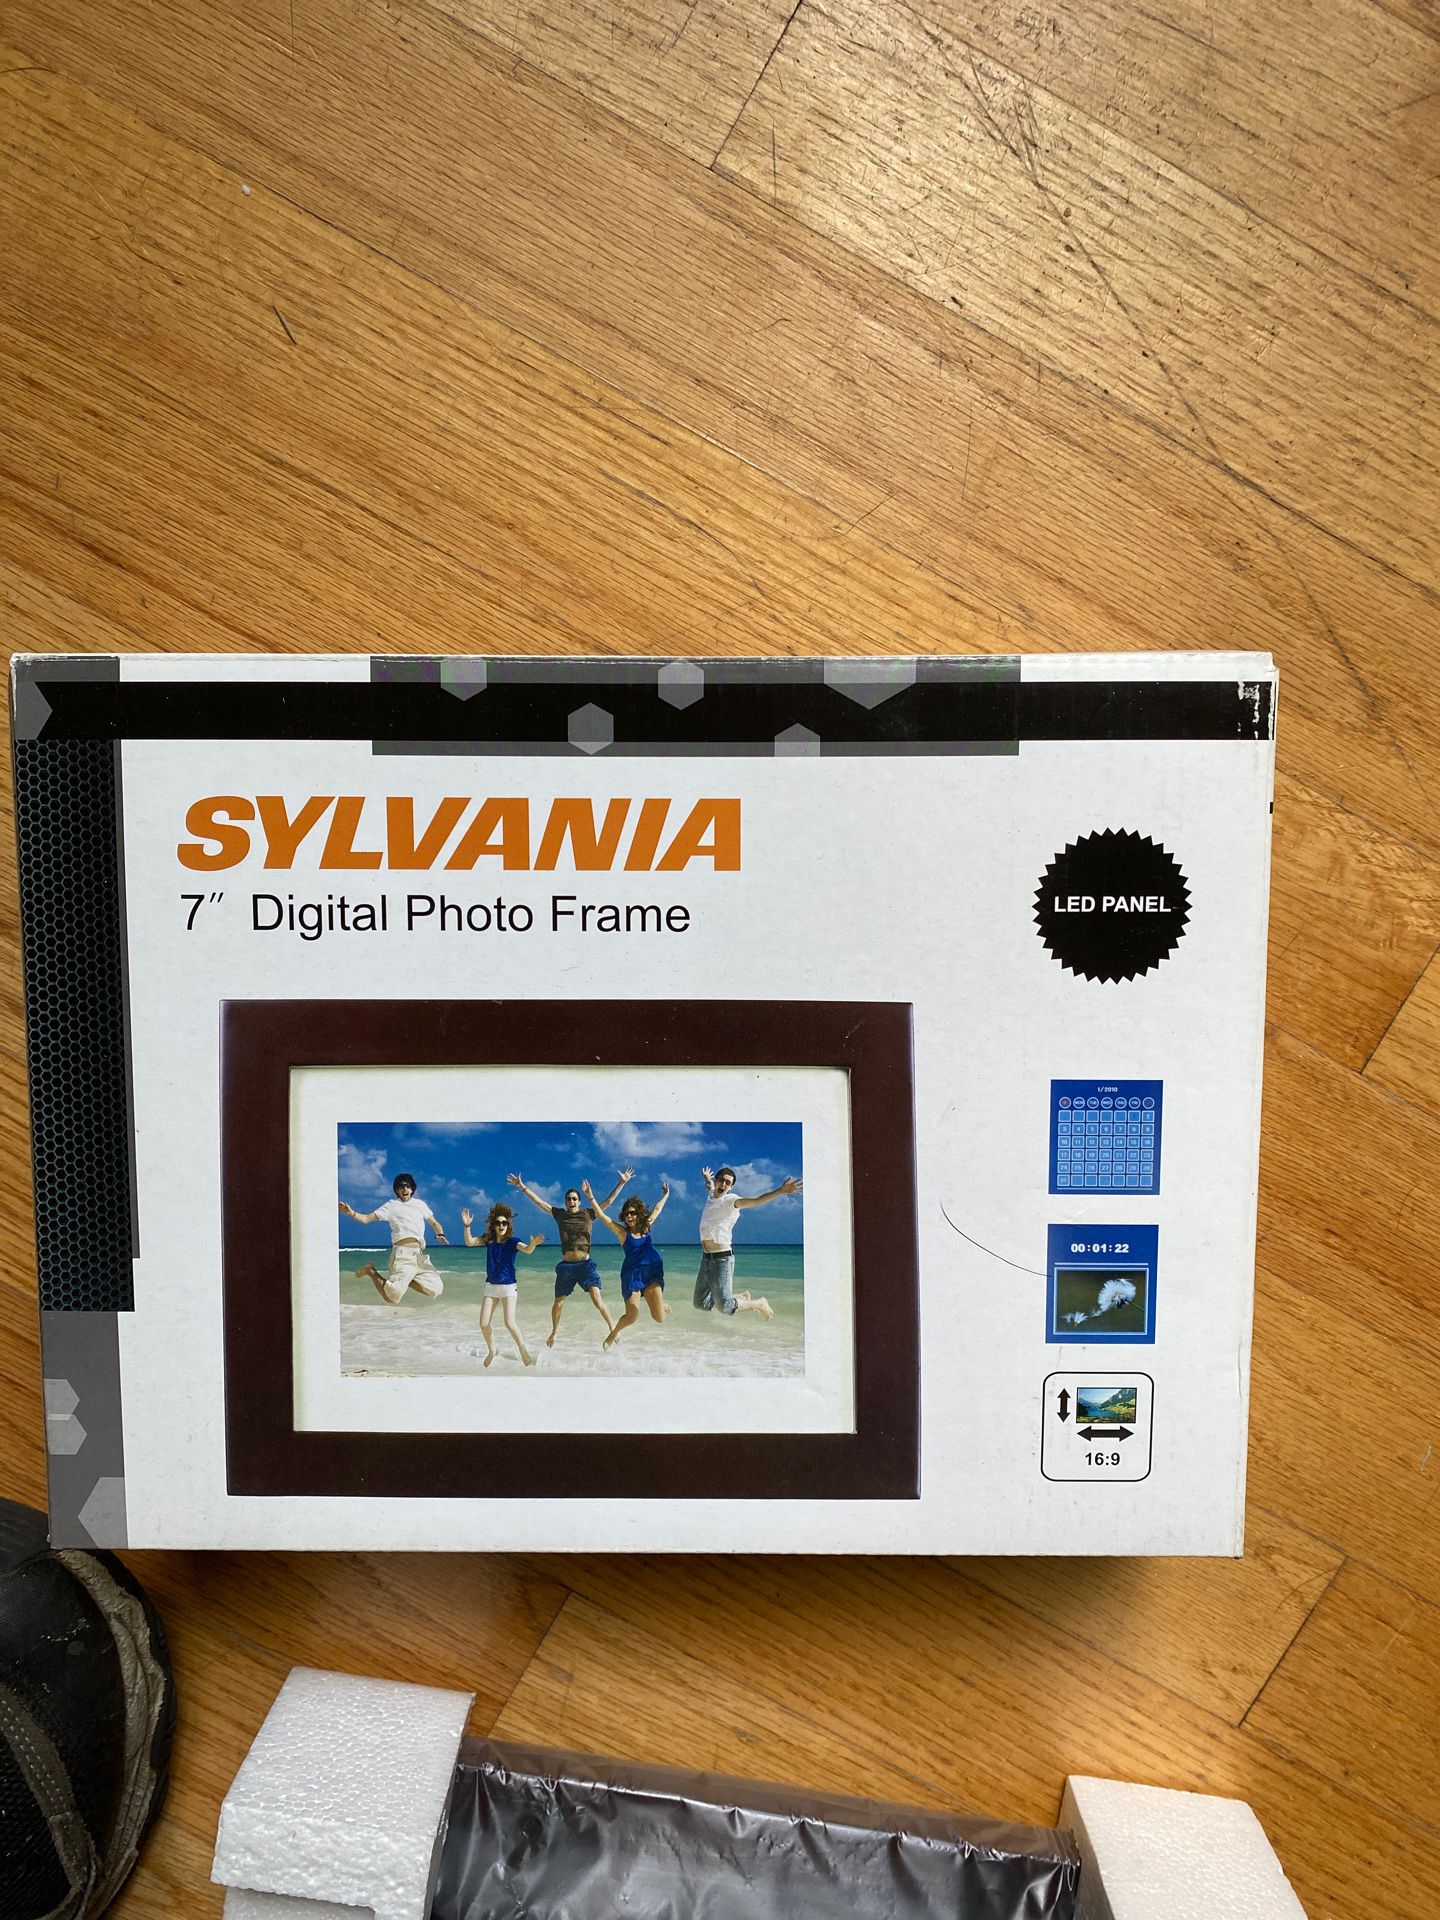 Phone frame digital frame